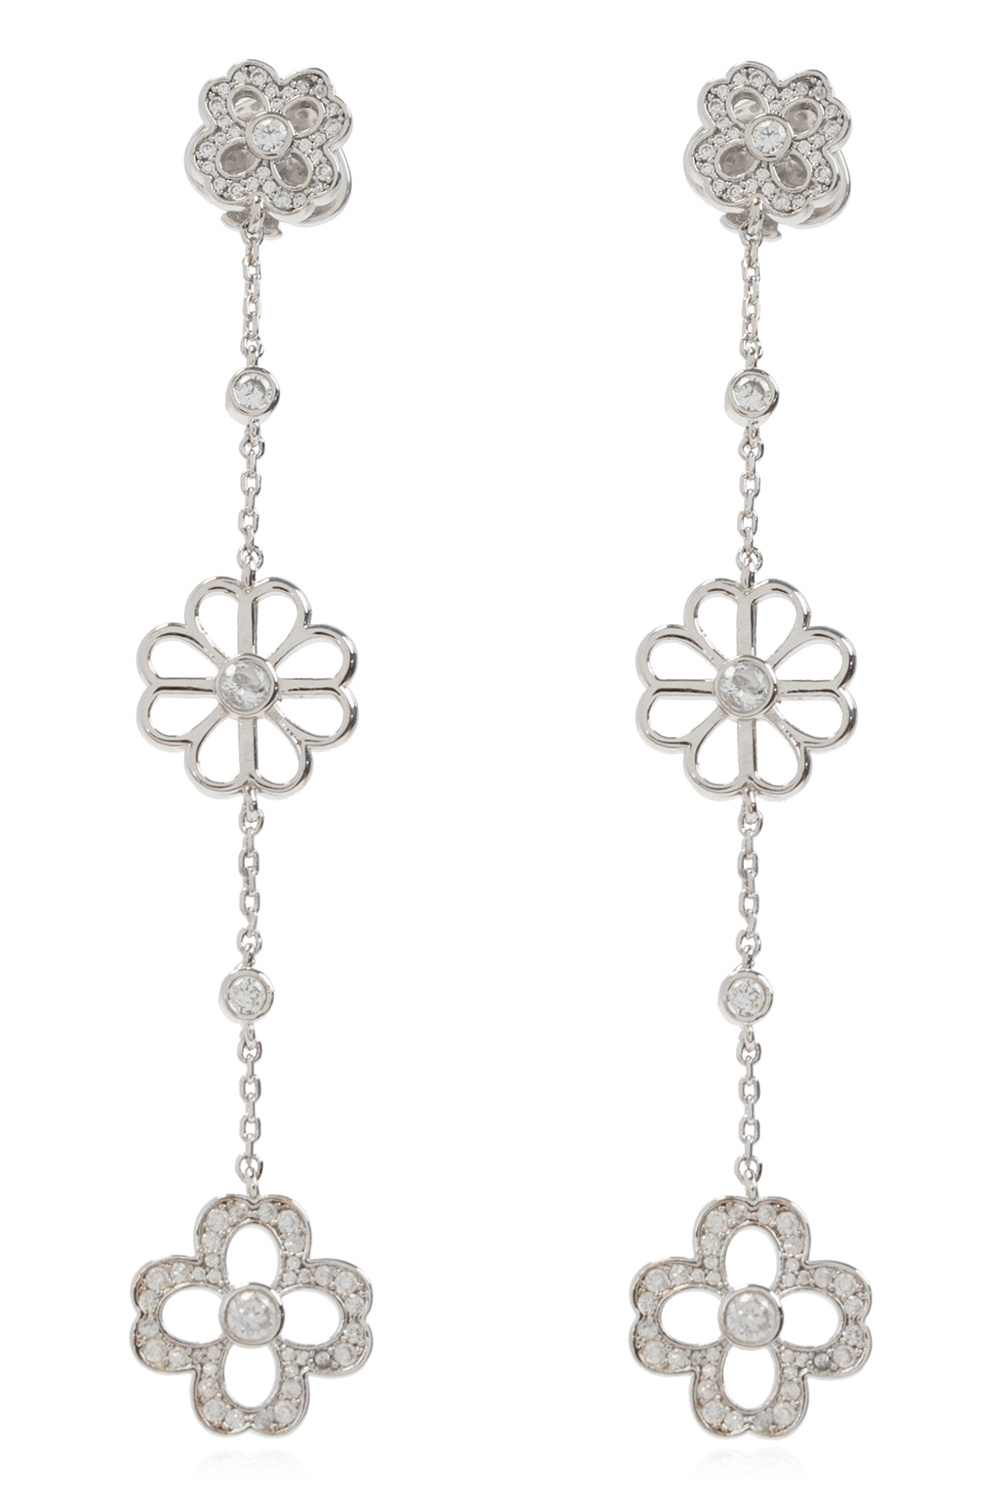 Kate Spade ‘Floral’ earrings